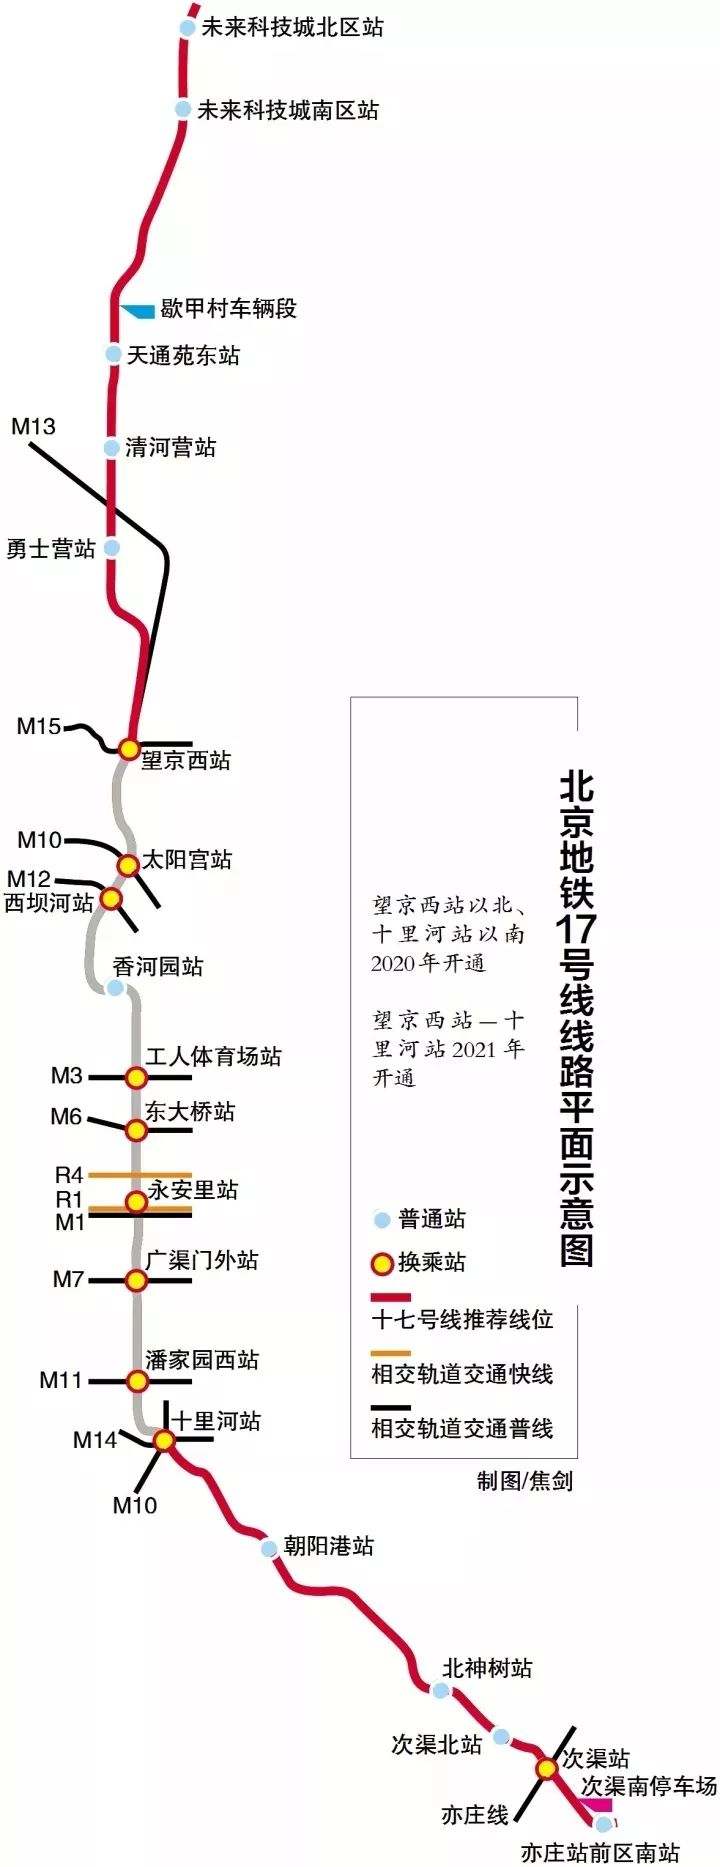 将与亦庄线接驳!北京地铁17号线开通时间确定